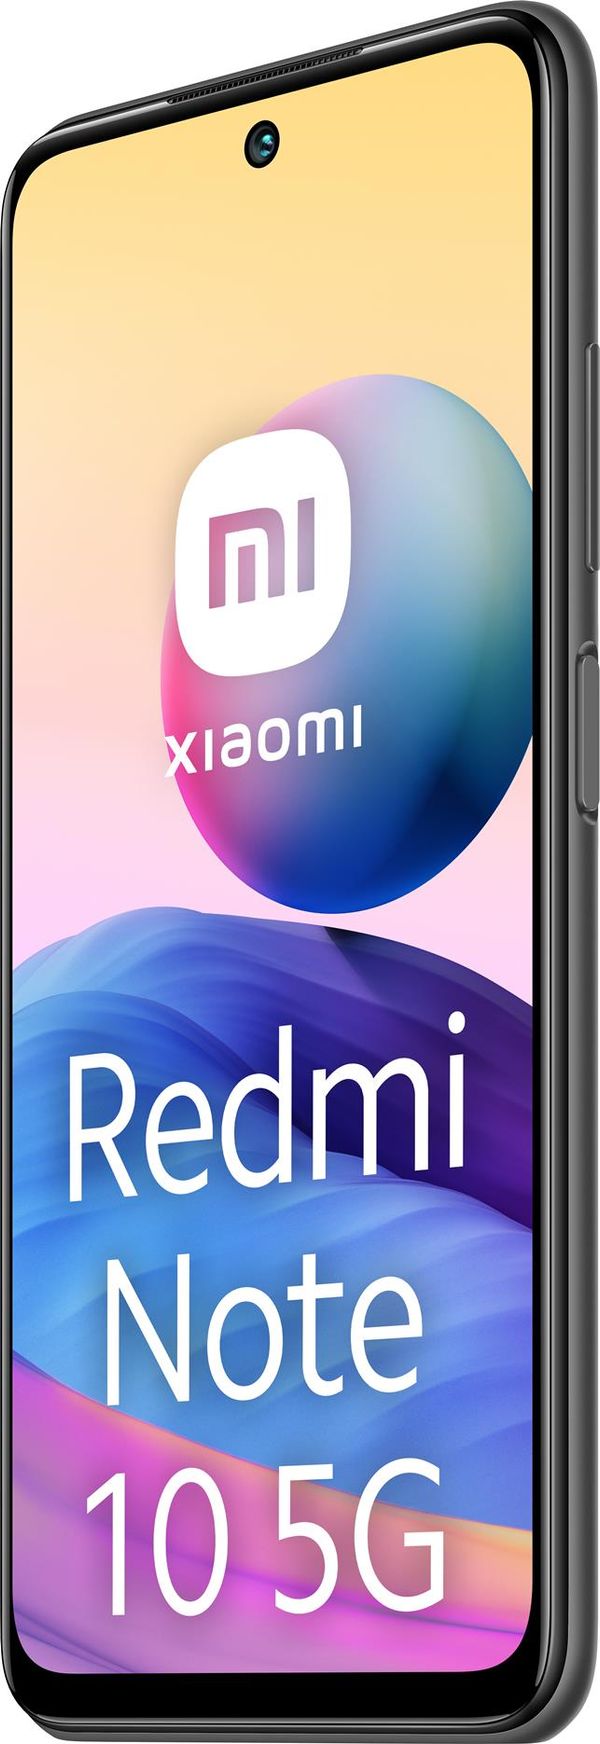 RE-9510K19X0021-PQ smartphone reacondicionado xiaomi redmi note 10 5g graphite gray 4g ram 64gb rom grado a